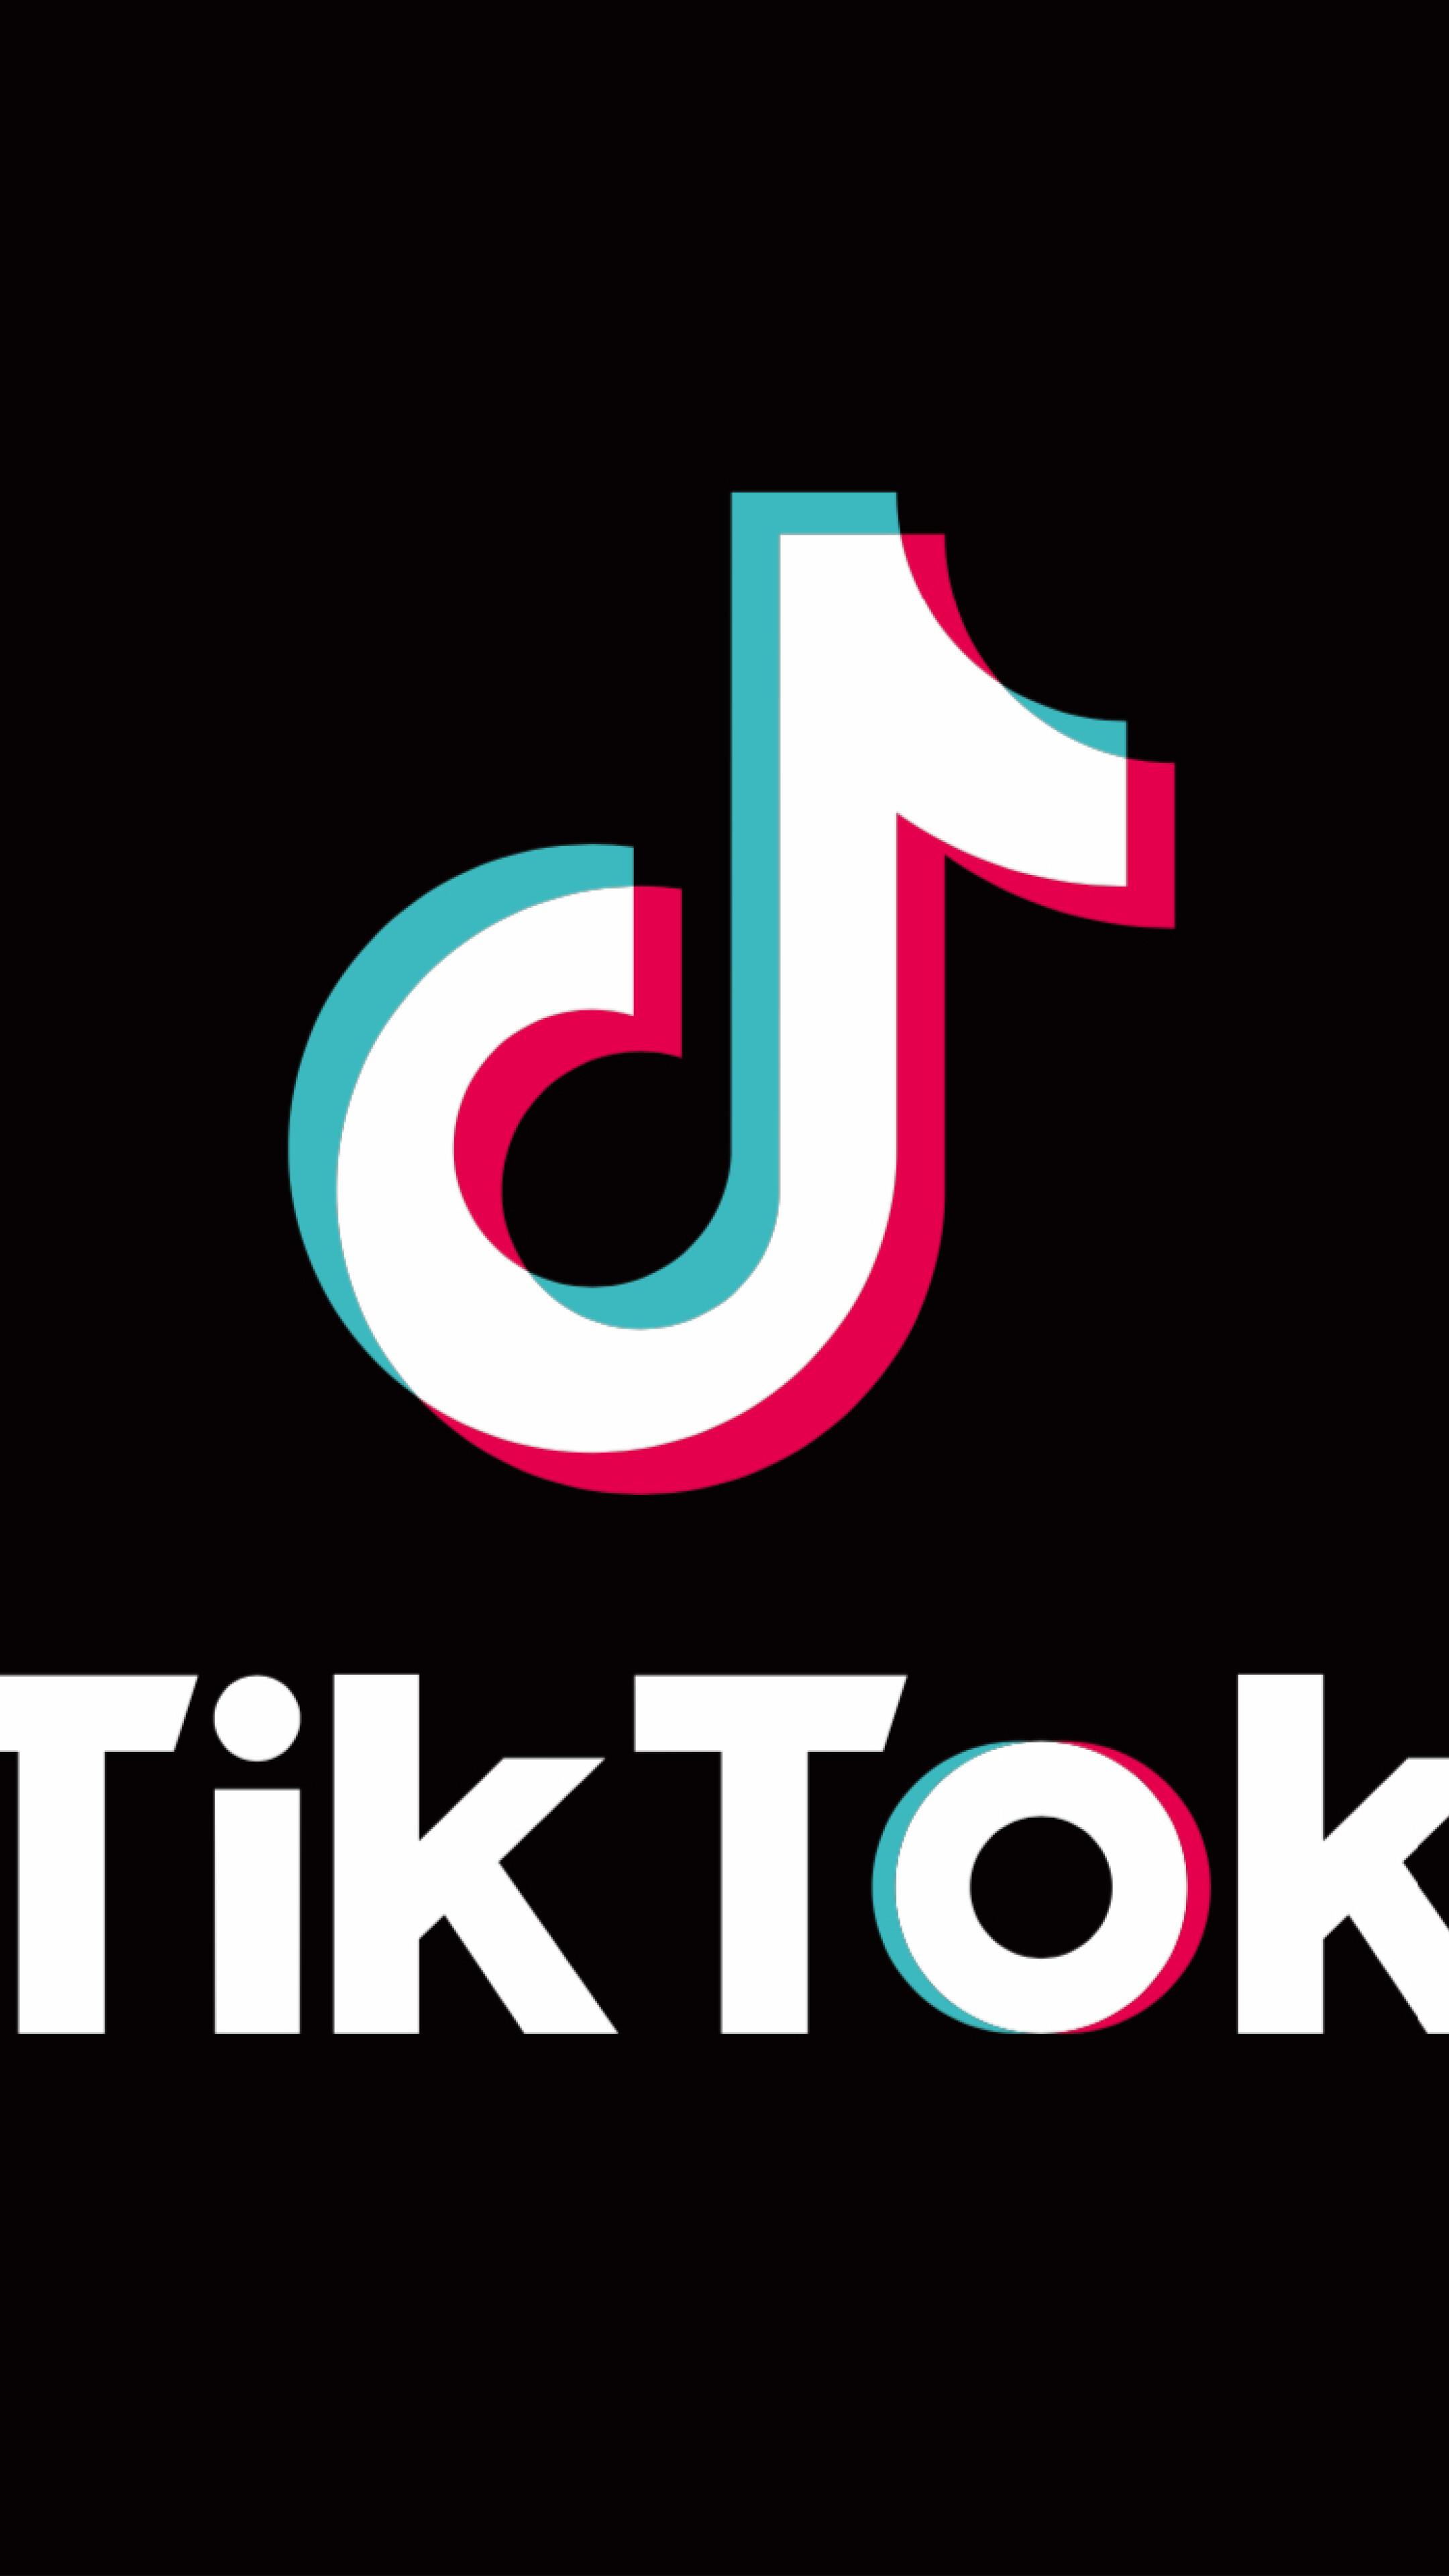 Tiktok Wallpaper Image Inside